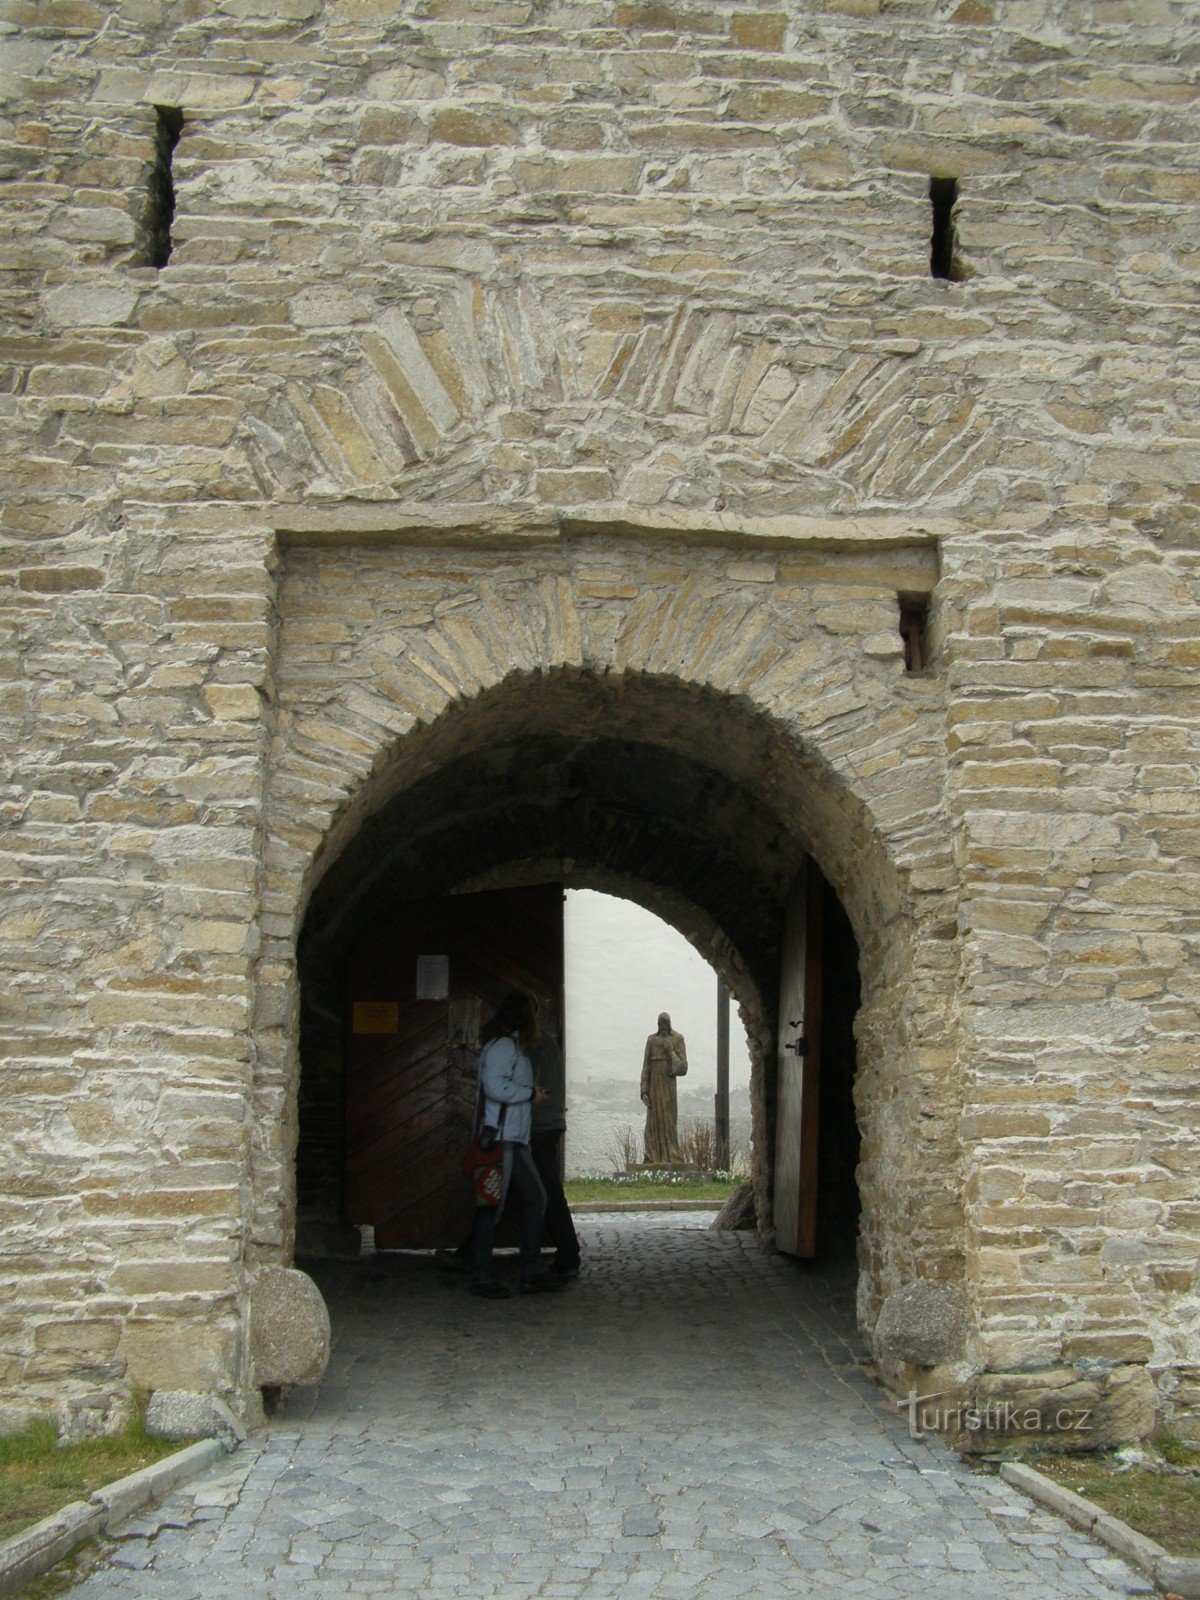 Velká Bíteš - en stad med en kyrklig fästning